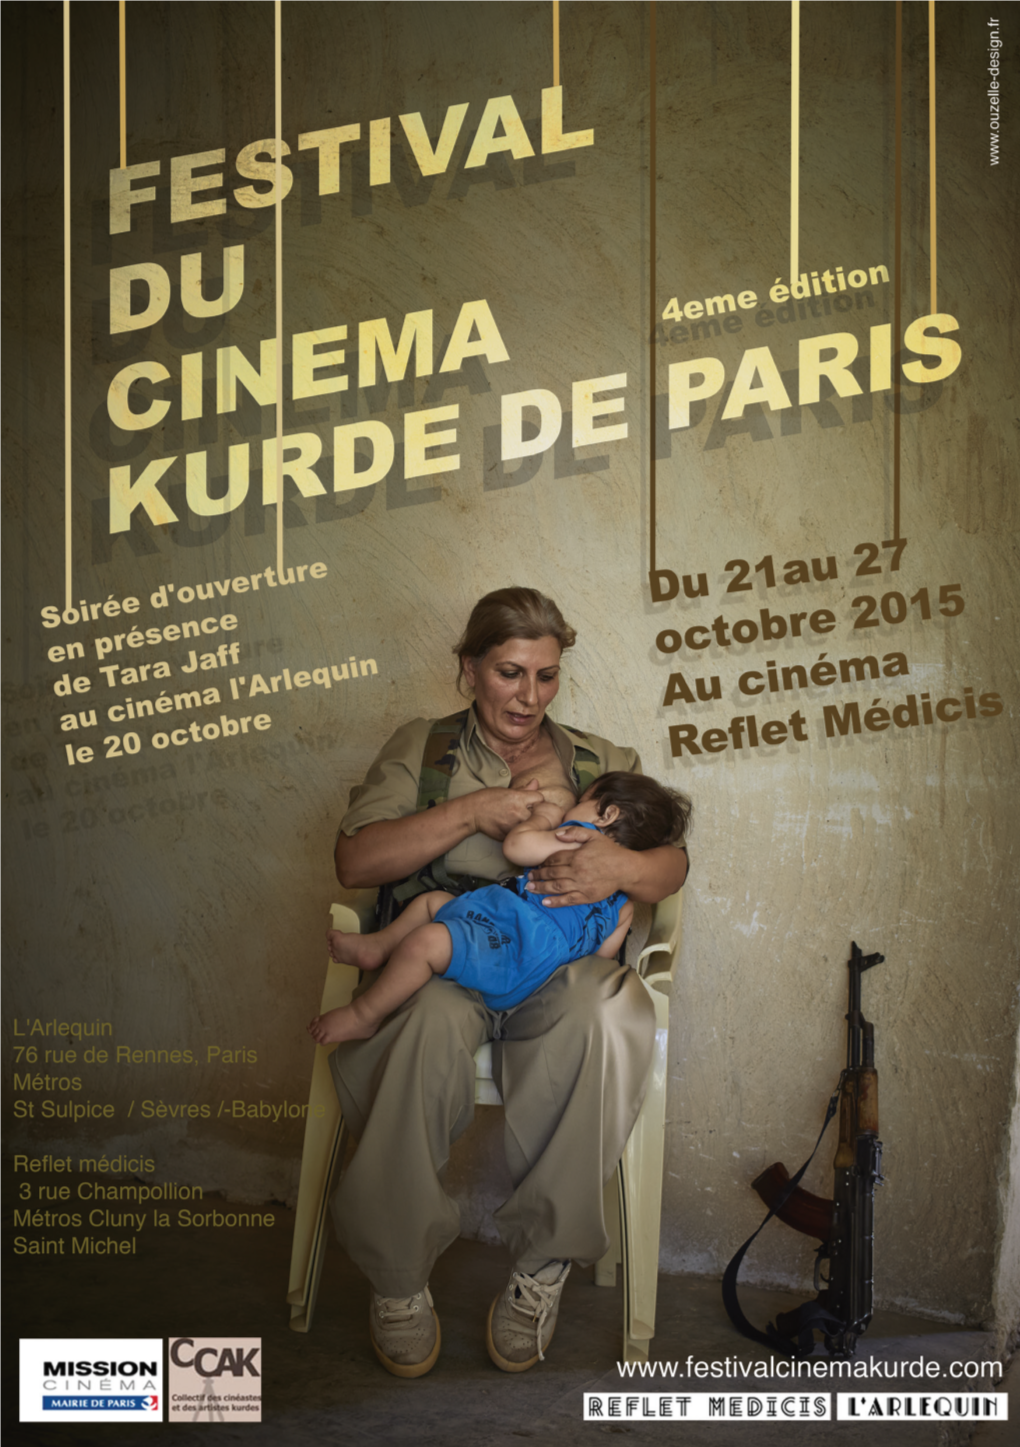 Festival De Cinéma Kurde De Paris, Et Je Vous Souhaite, À Tous, De Très Belles Projections